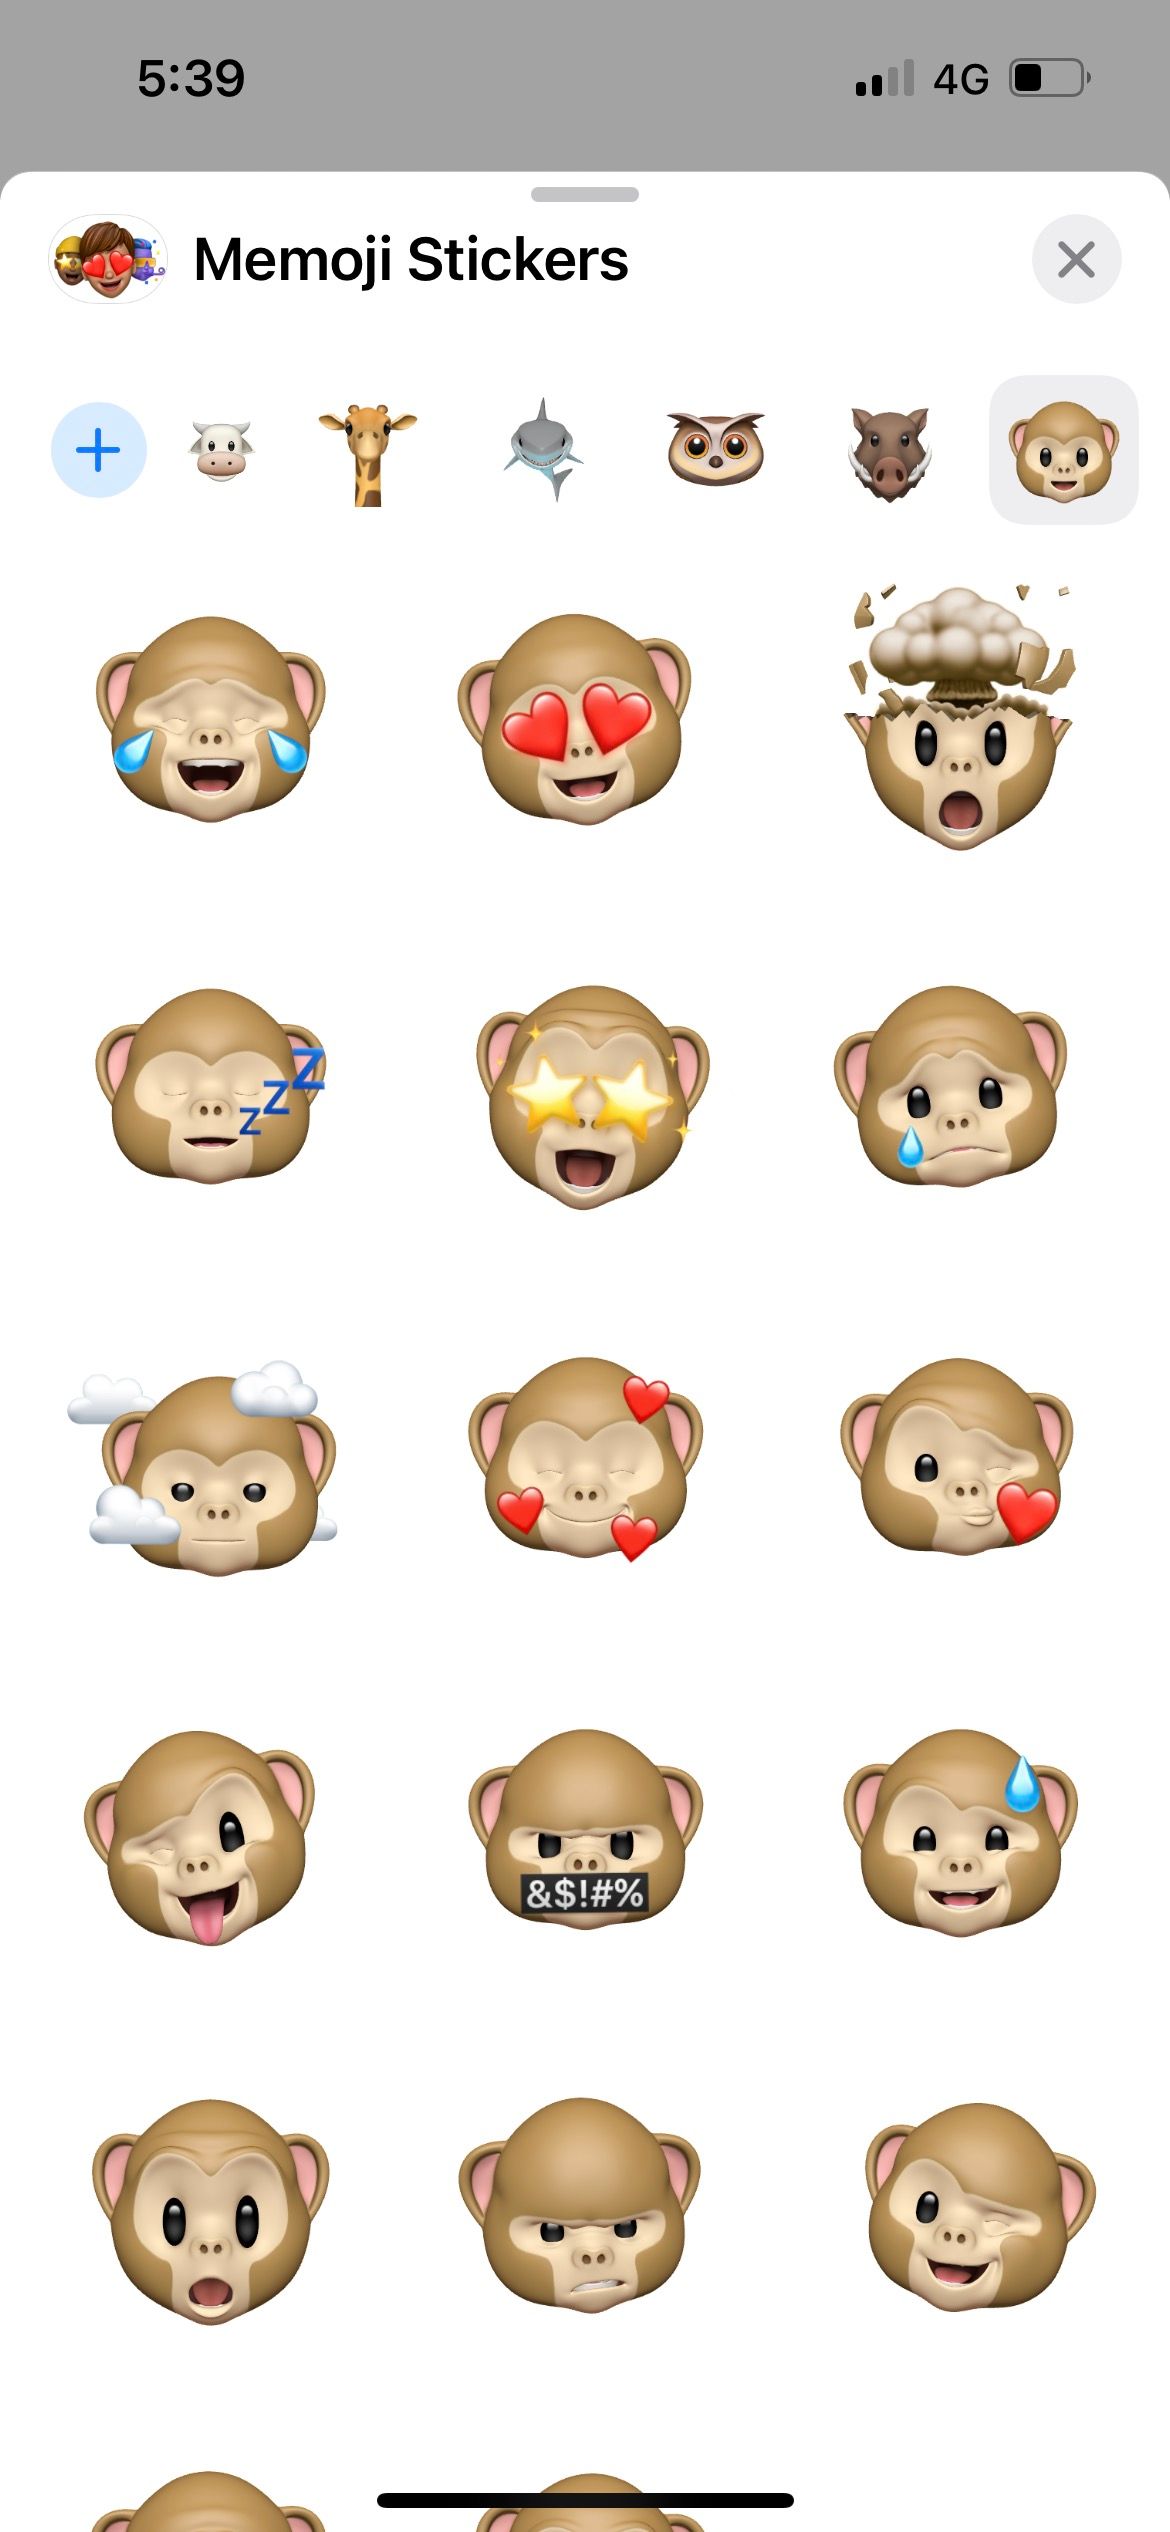 بسته برچسب انیموجی میمون در برنامه پیام های آیفون